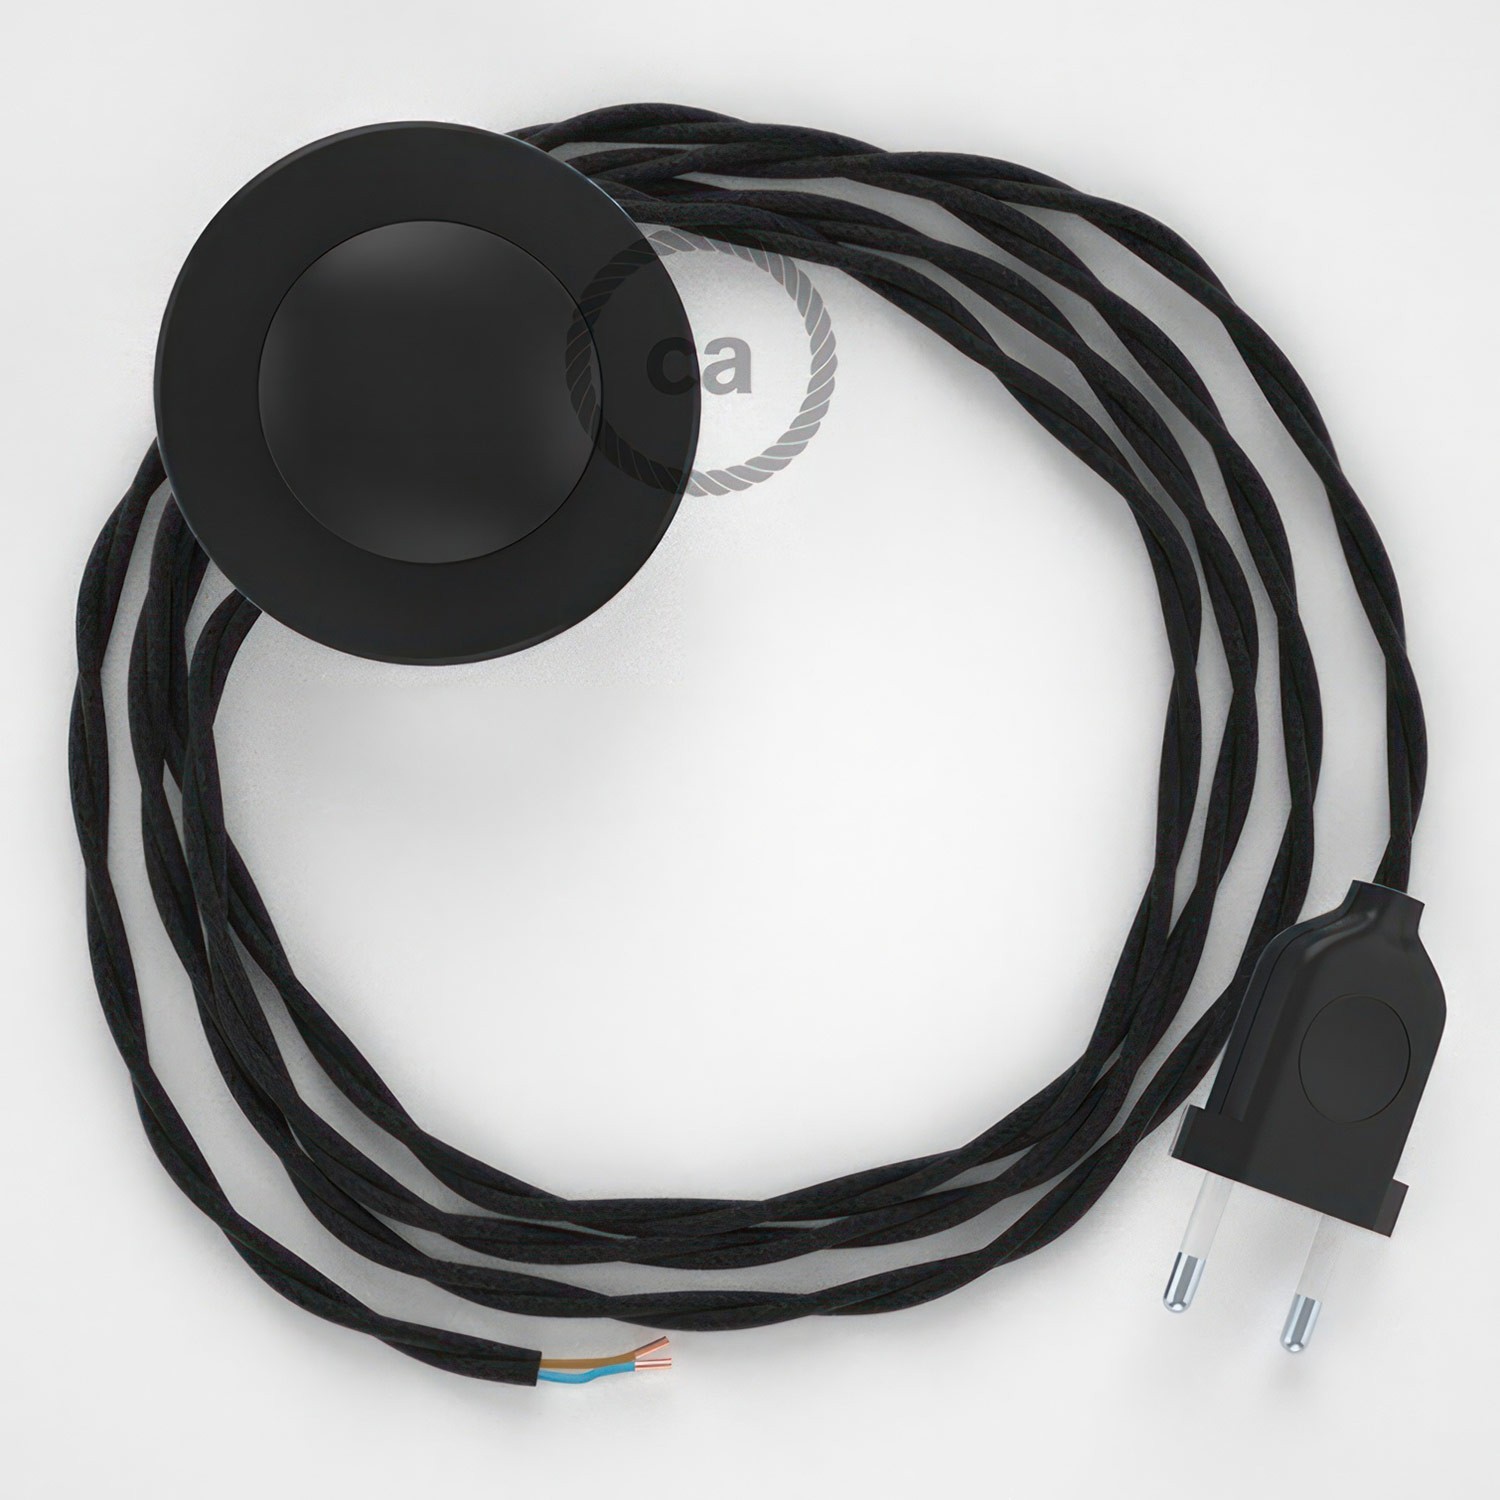 Cableado para lámpara de pie, cable TC04 Algodón Negro 3 m. Elige tu el color de la clavija y del interruptor!